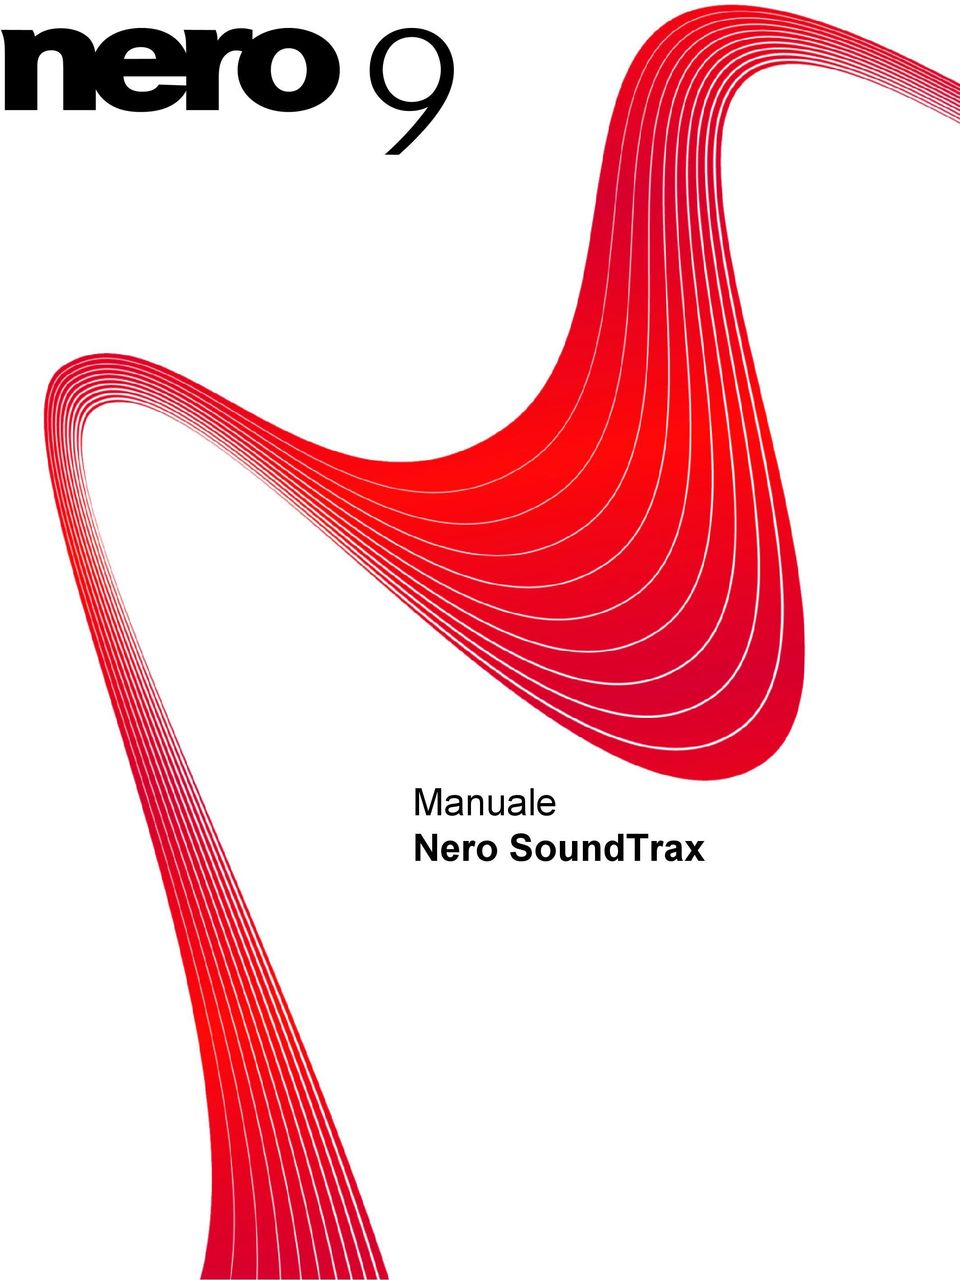 SoundTrax